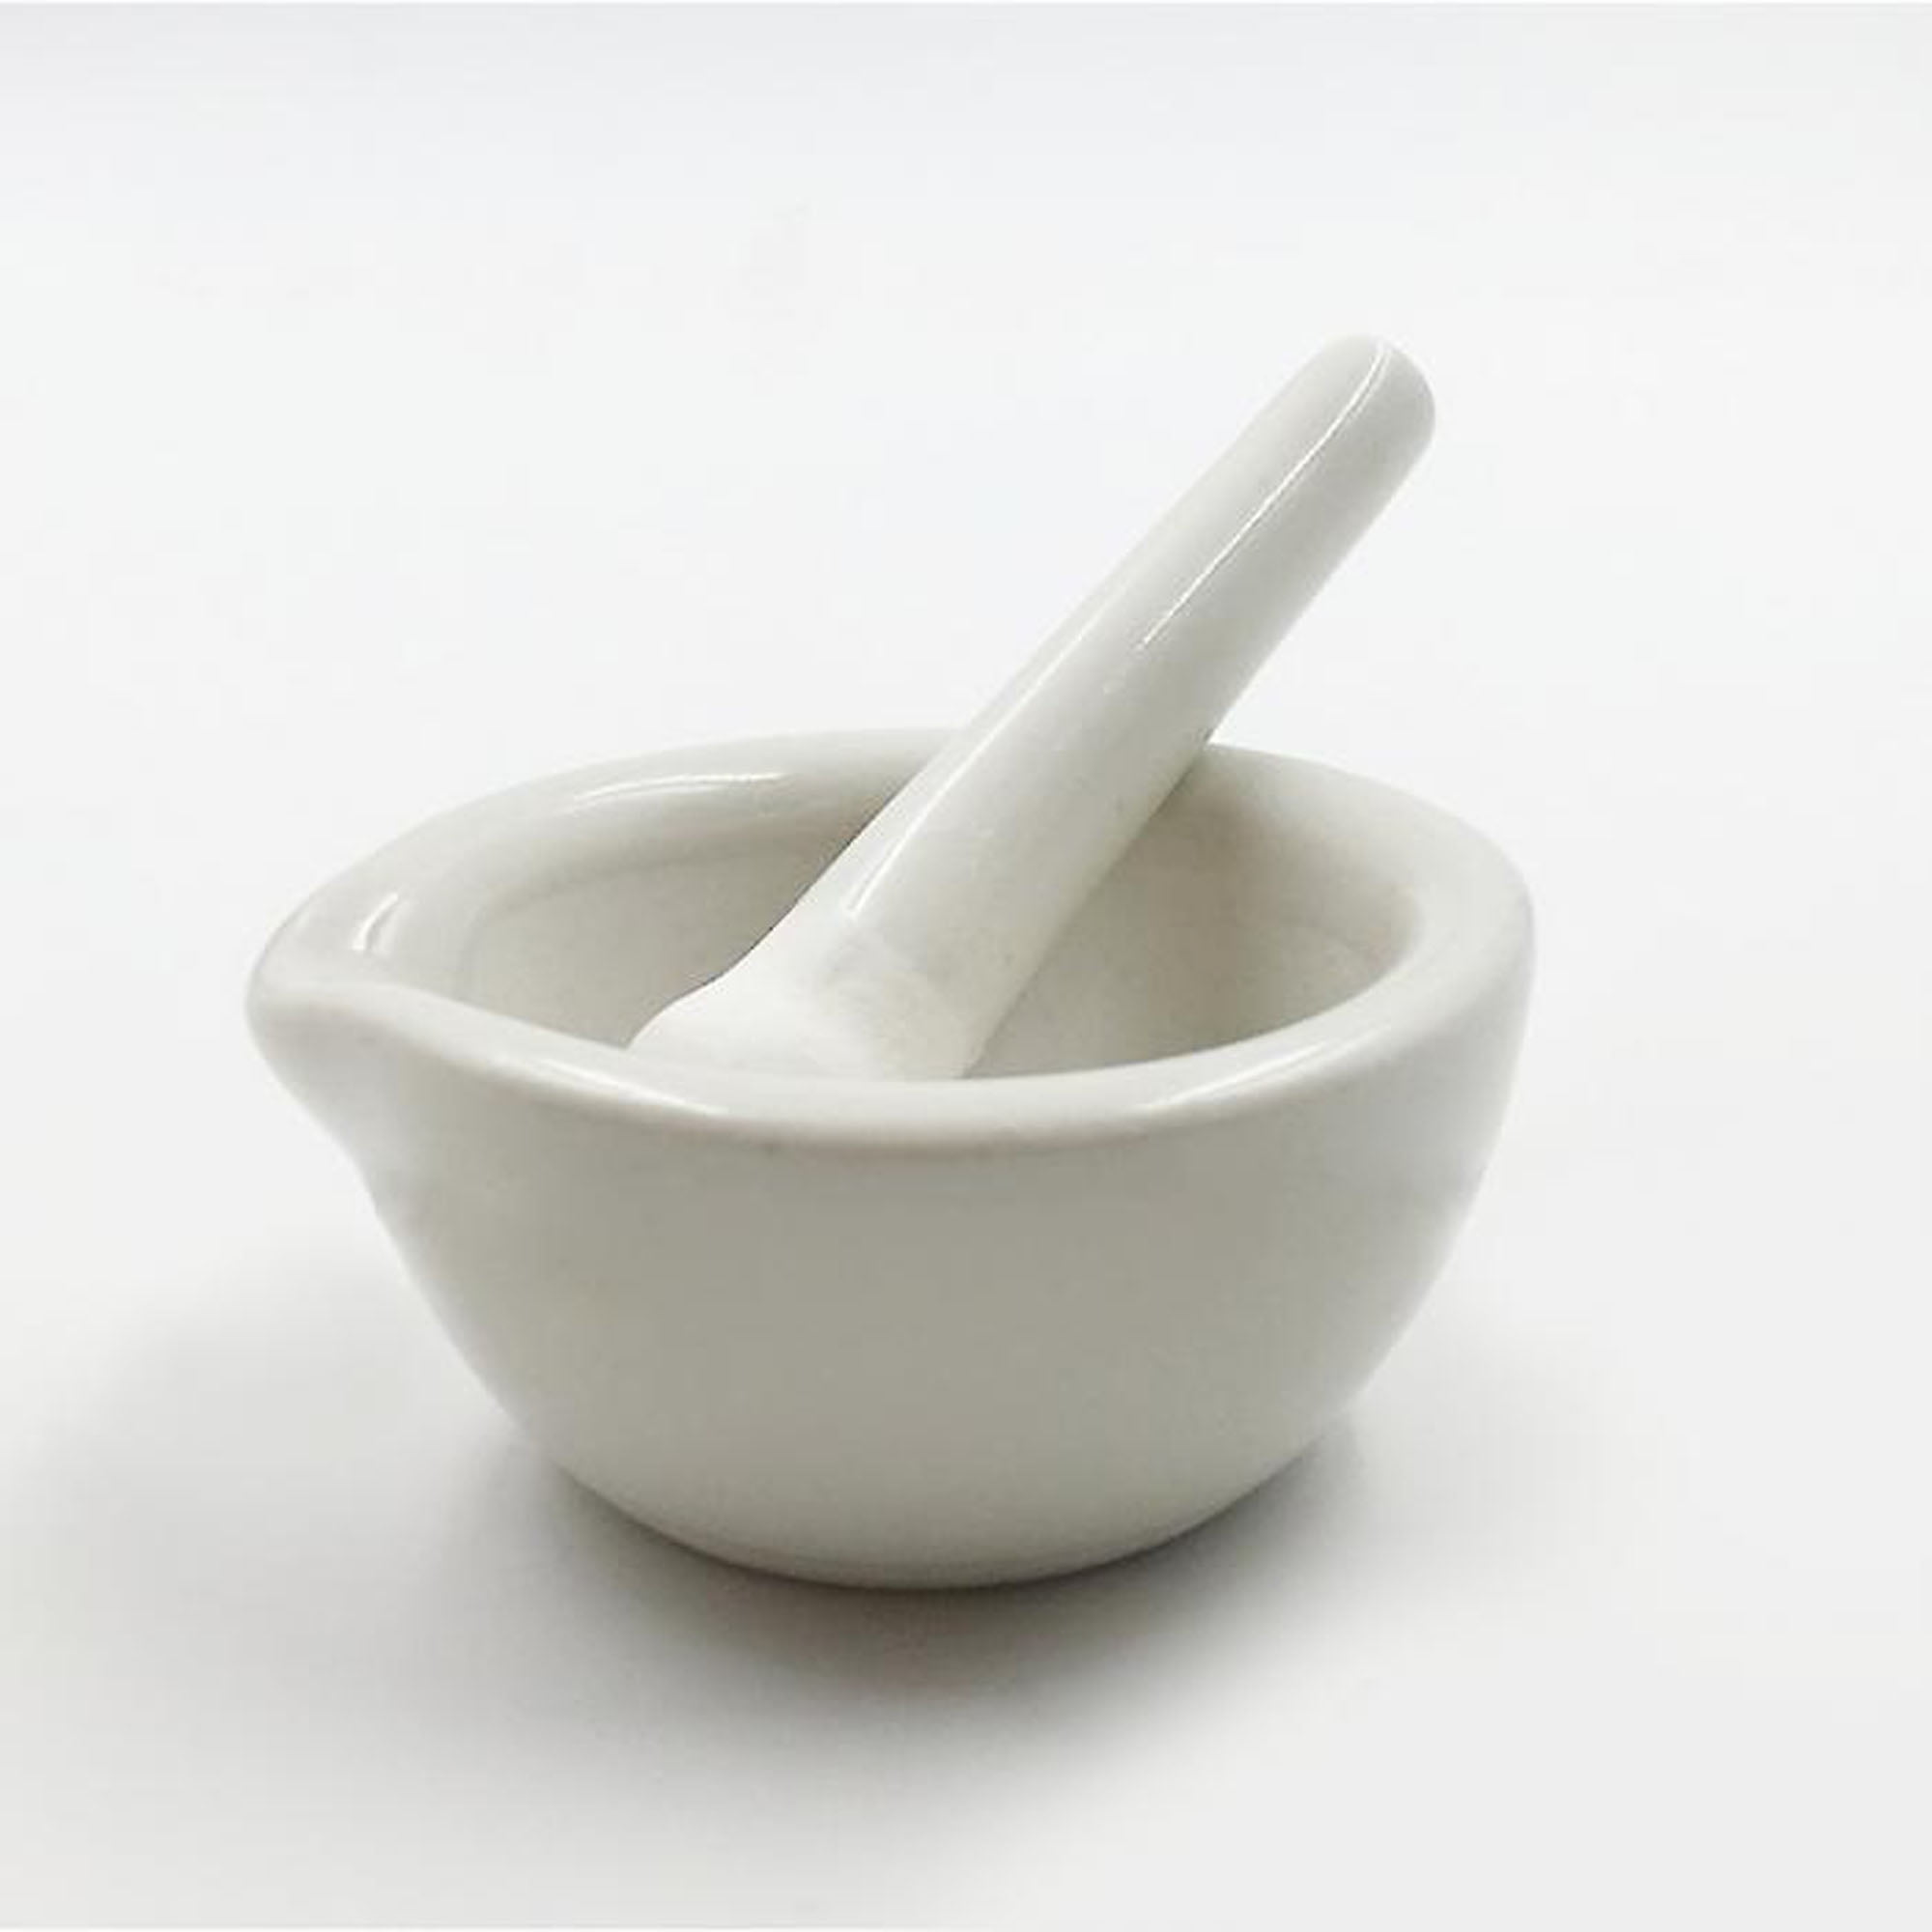 Details about   254mm Ceramic Porcelain Mortar And Pestle Mix Grind Bowl Set Herbs Kitchen 